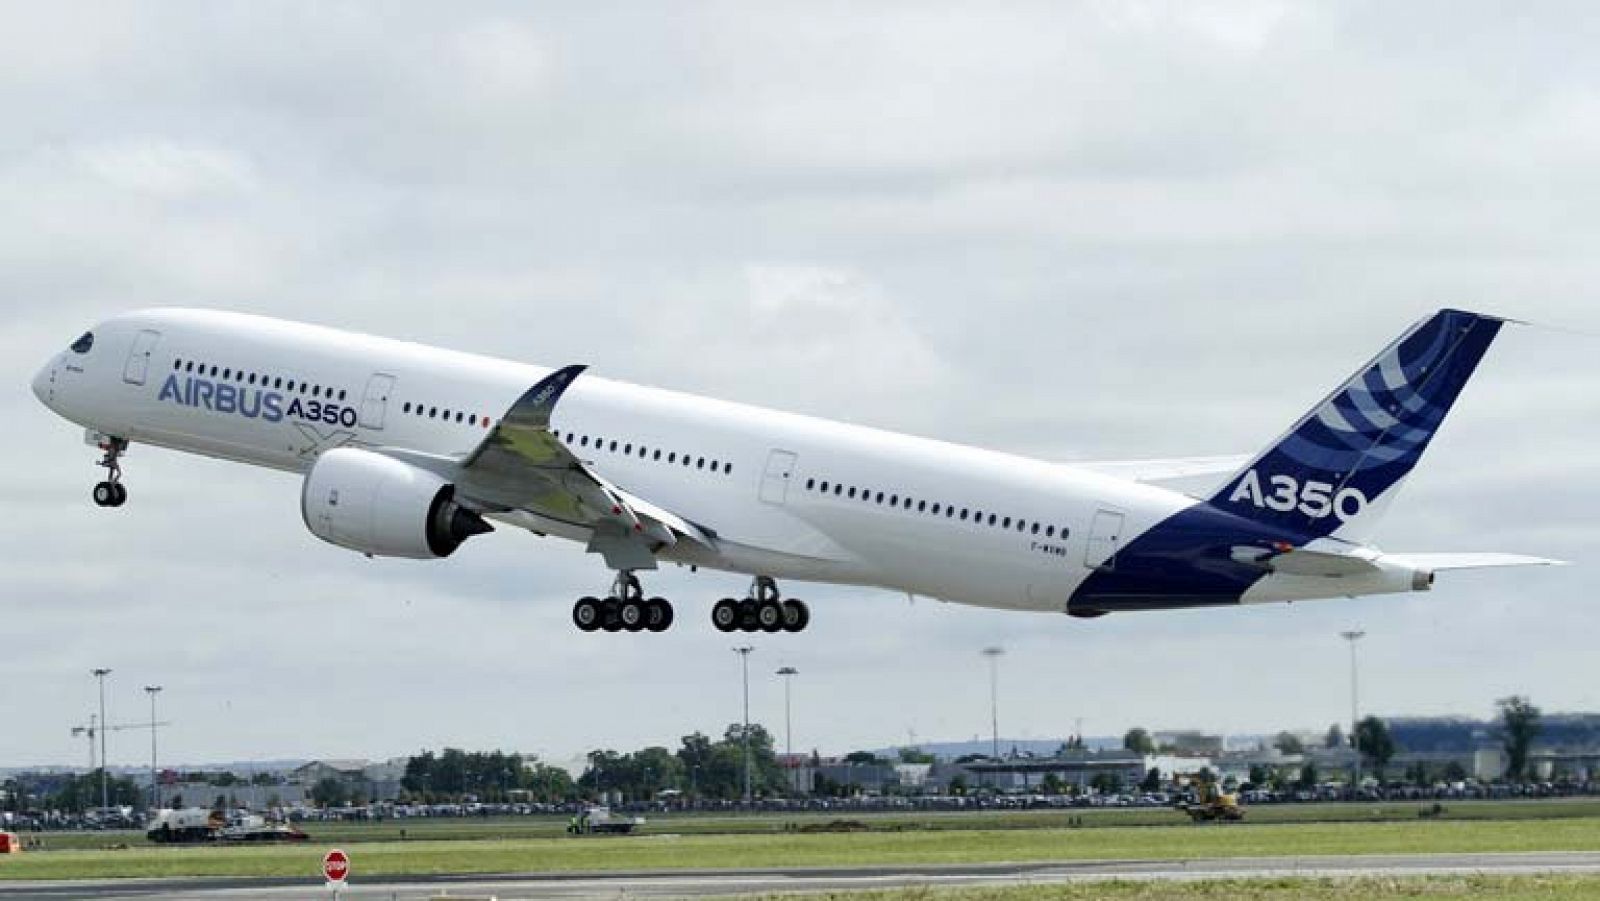 El Airbus A350 realiza su primer vuelo de pruebas   